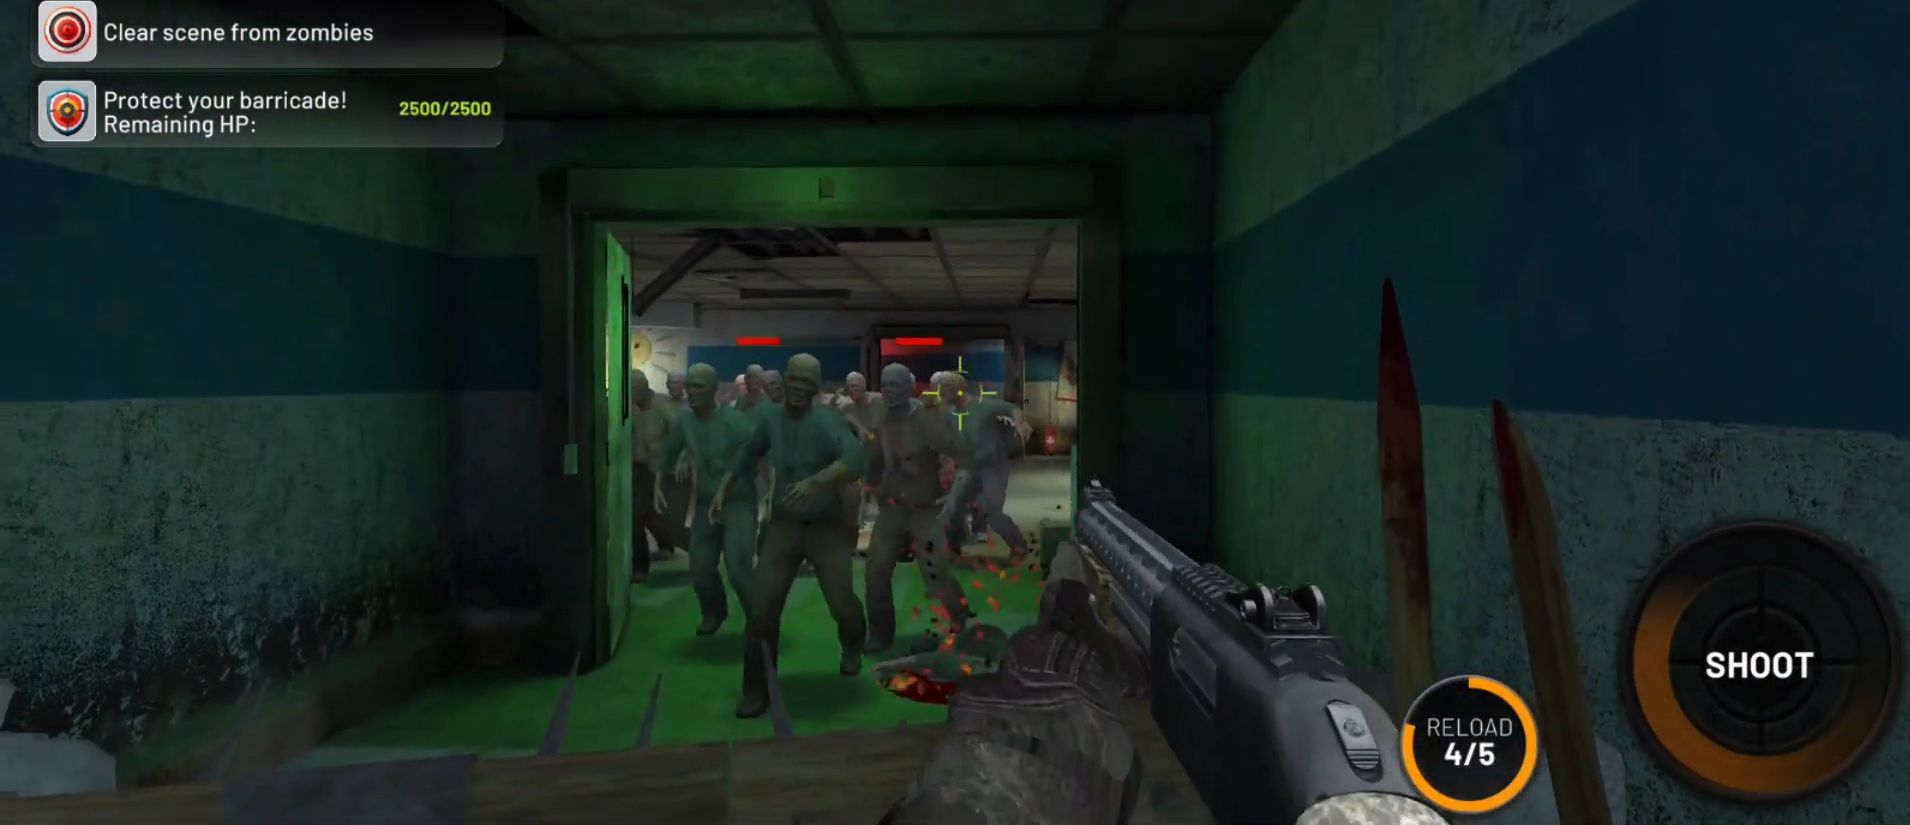 Deadlander: FPS Zombie Game